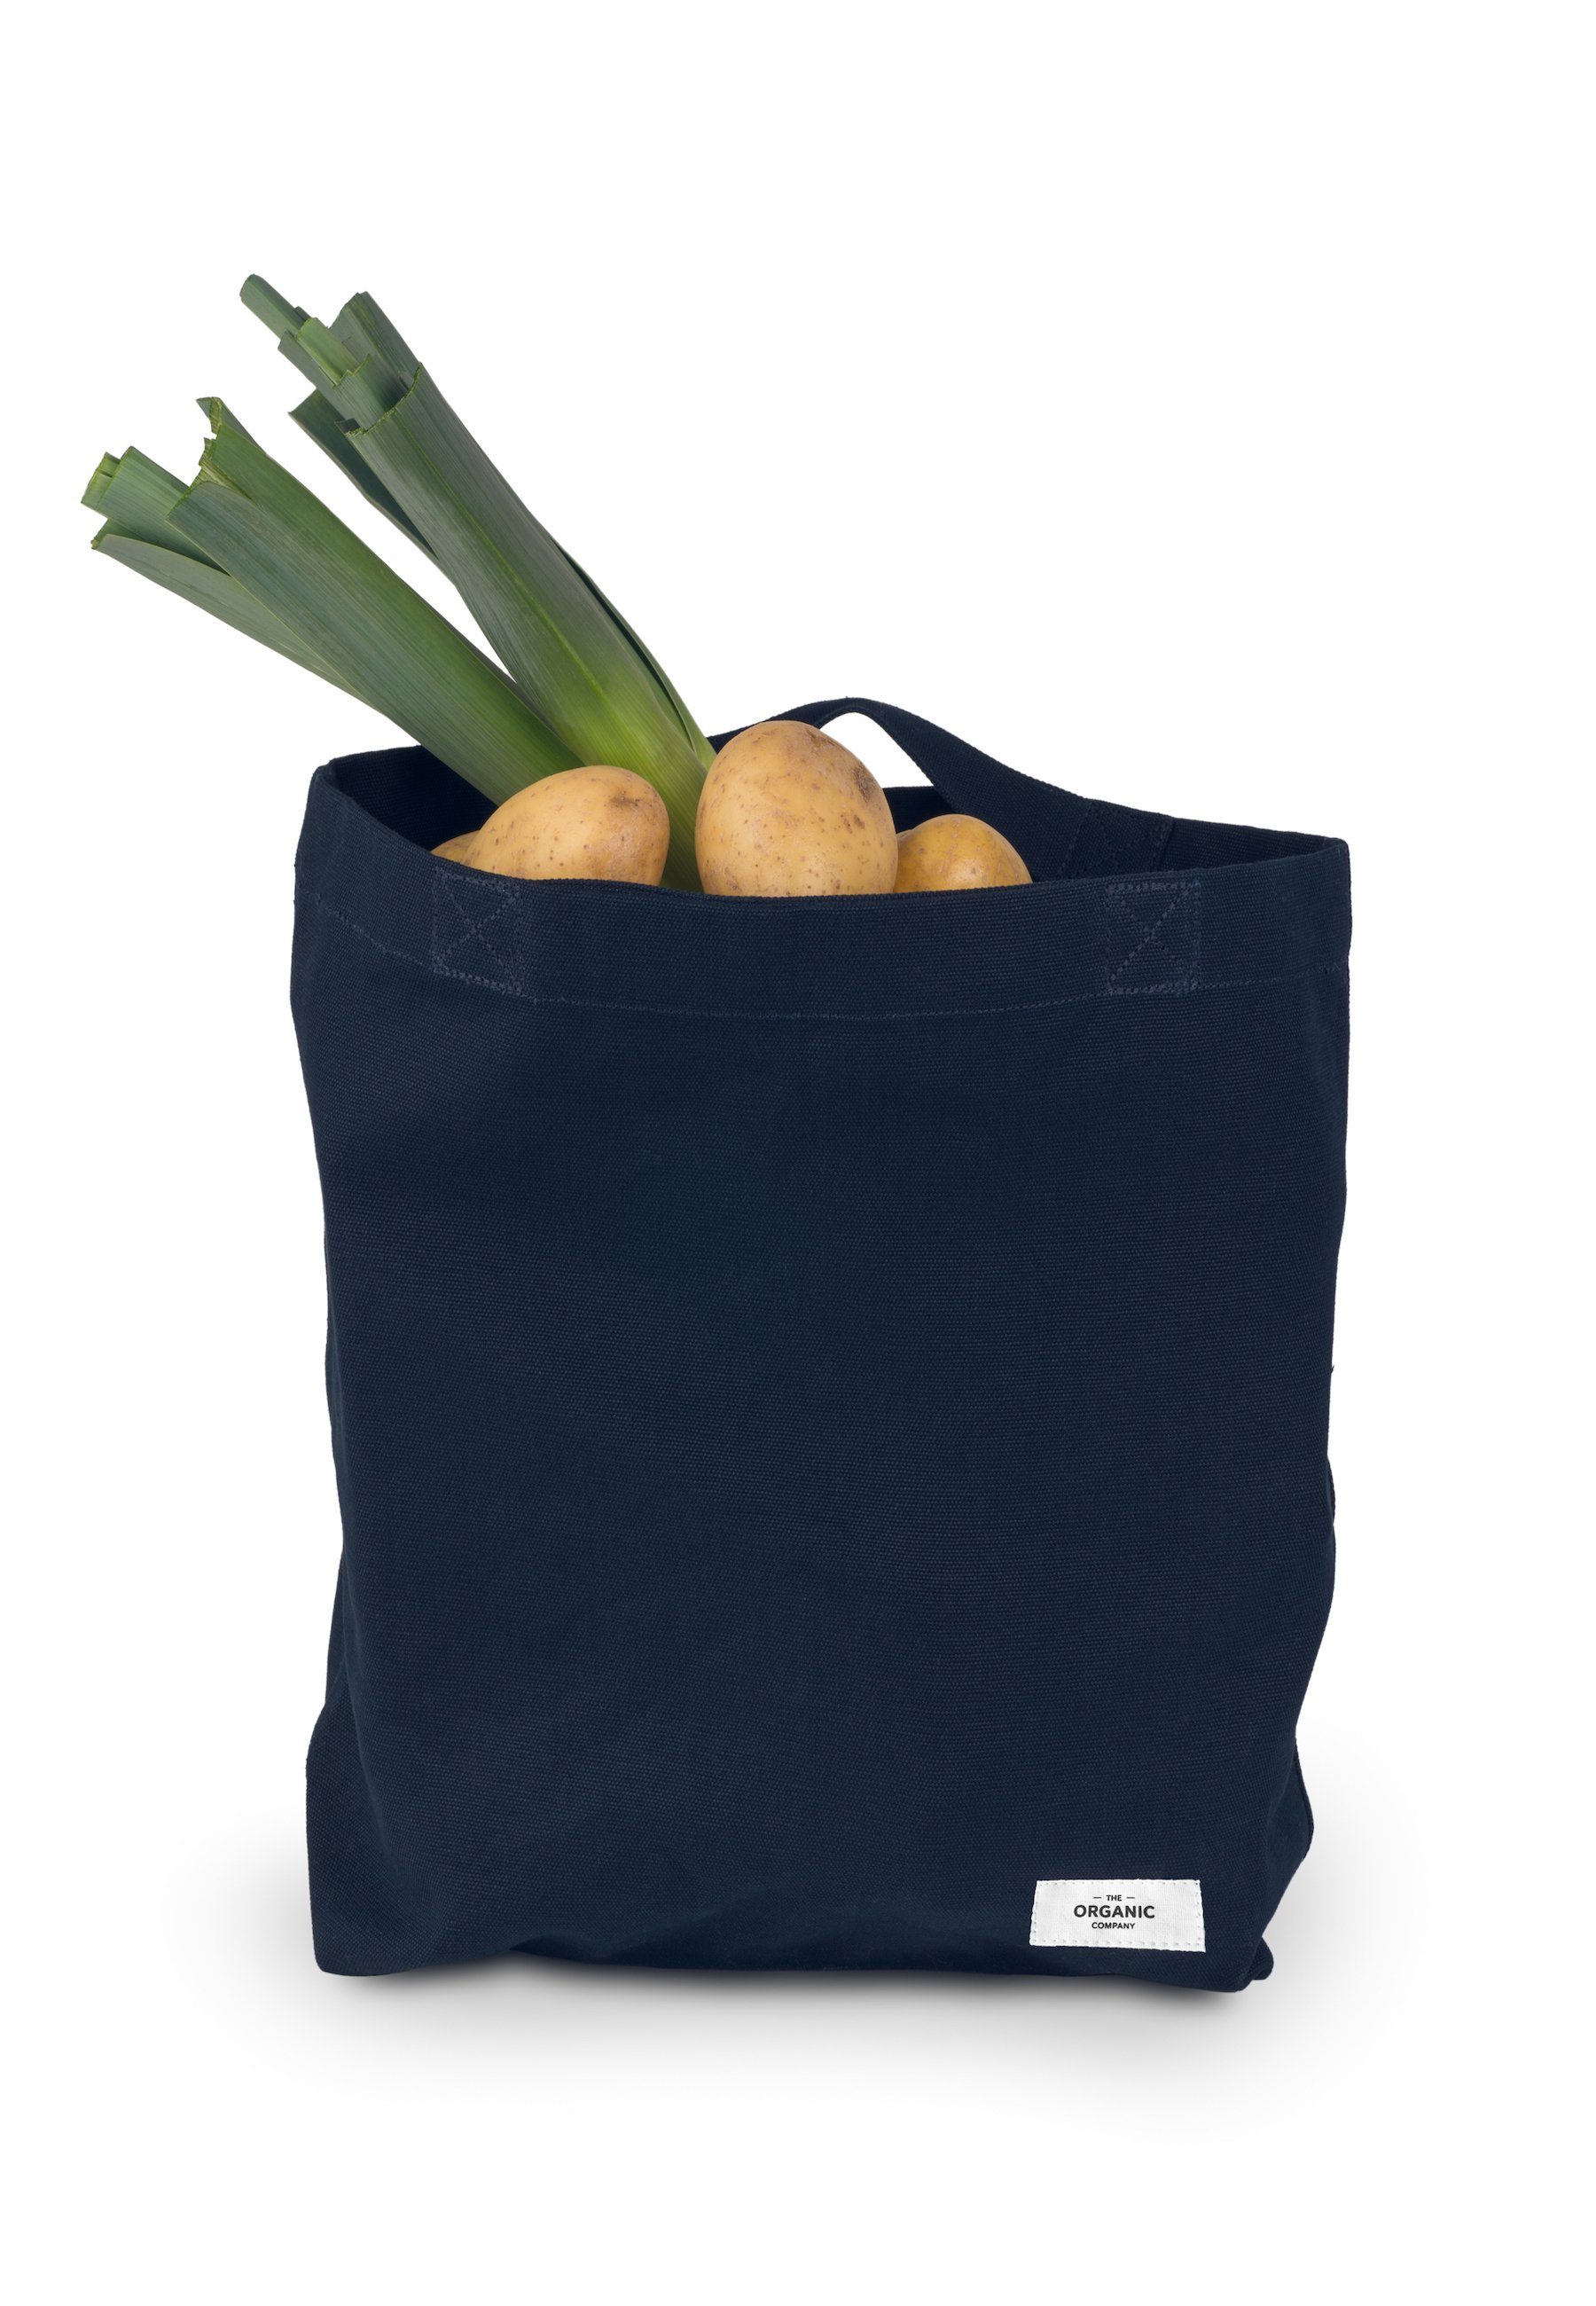 GOTS zertifizierte Meine Company Tasche, Beuteltasche blue Organische dark Bio-Baumwolle Organic The